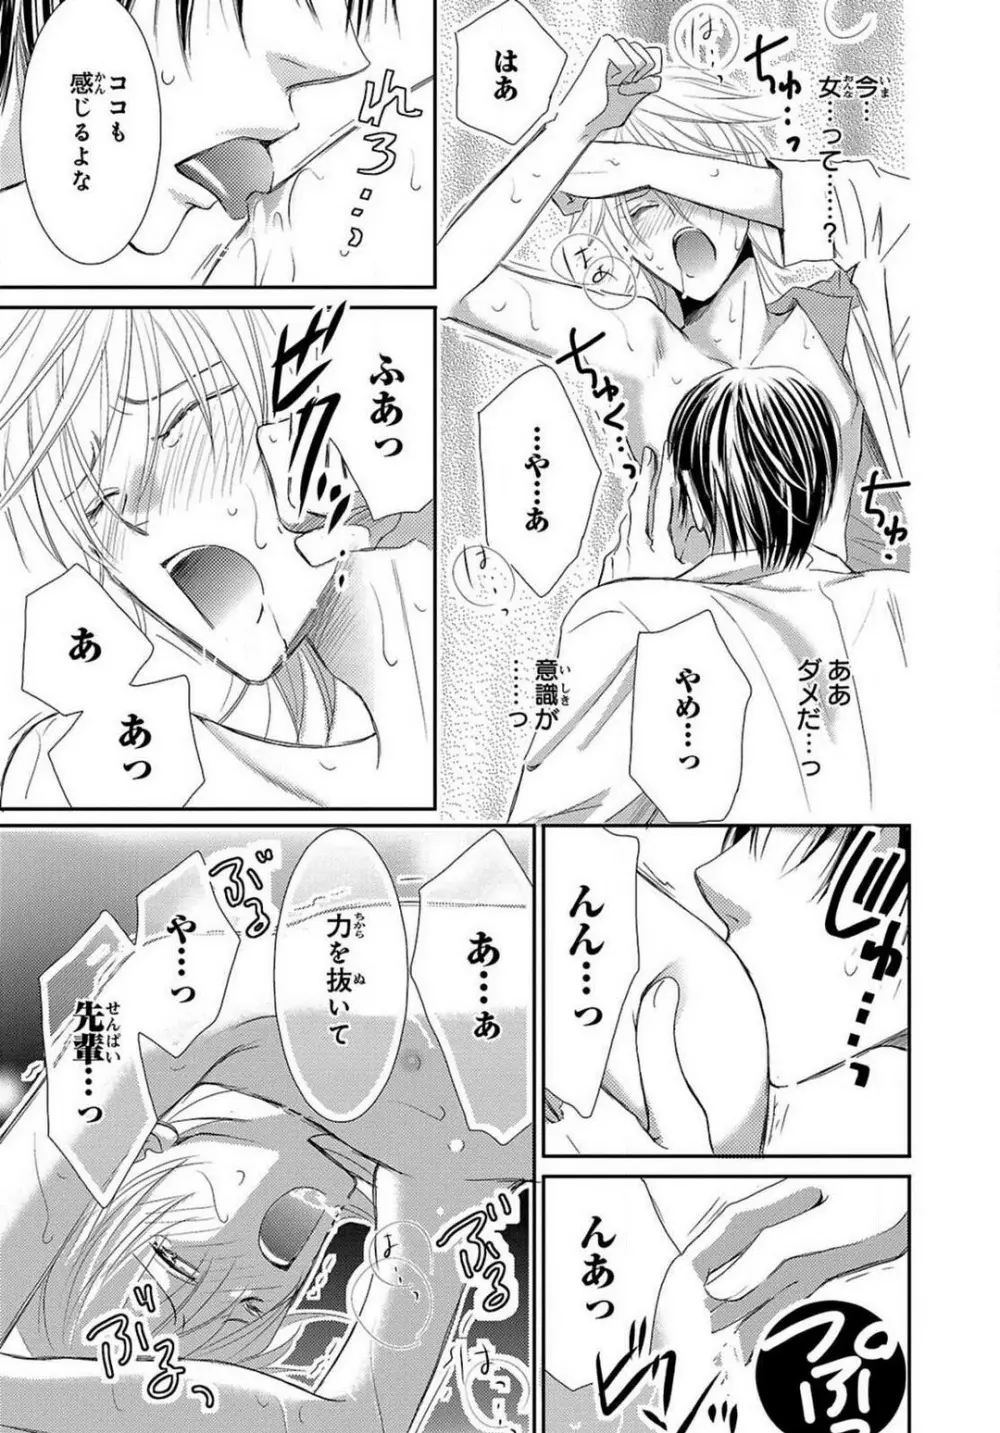 快感☆メタモルフォーゼ〜甘いクスリで性転換!? 1-2 42ページ